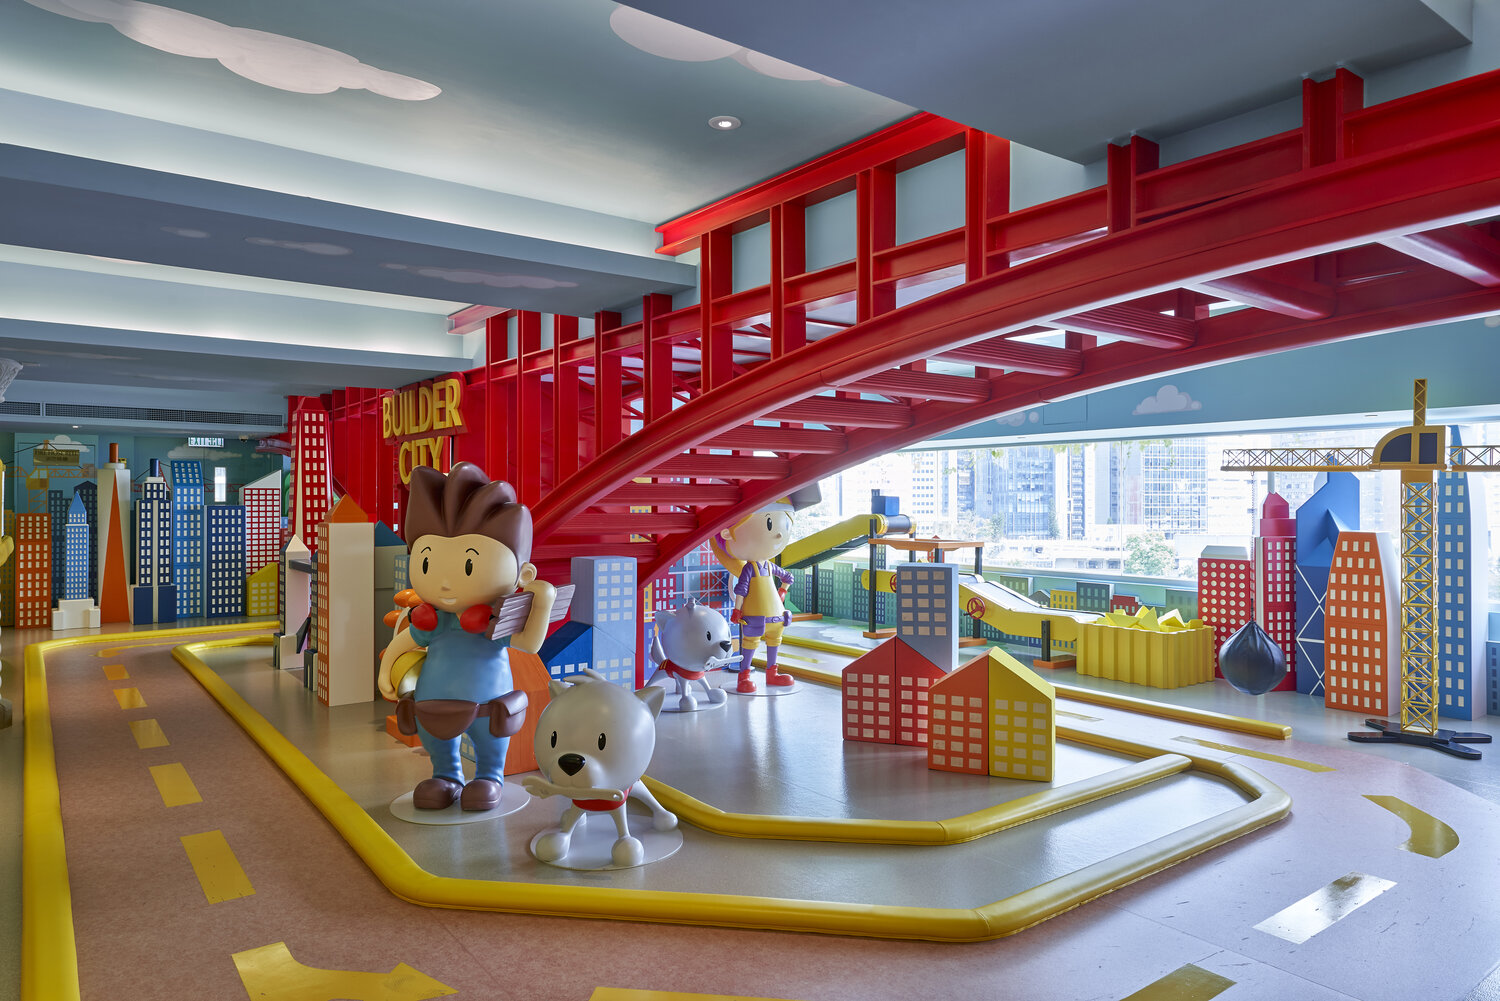 06 'Builder City' Play Area, Hong Kong — Studio Cassells